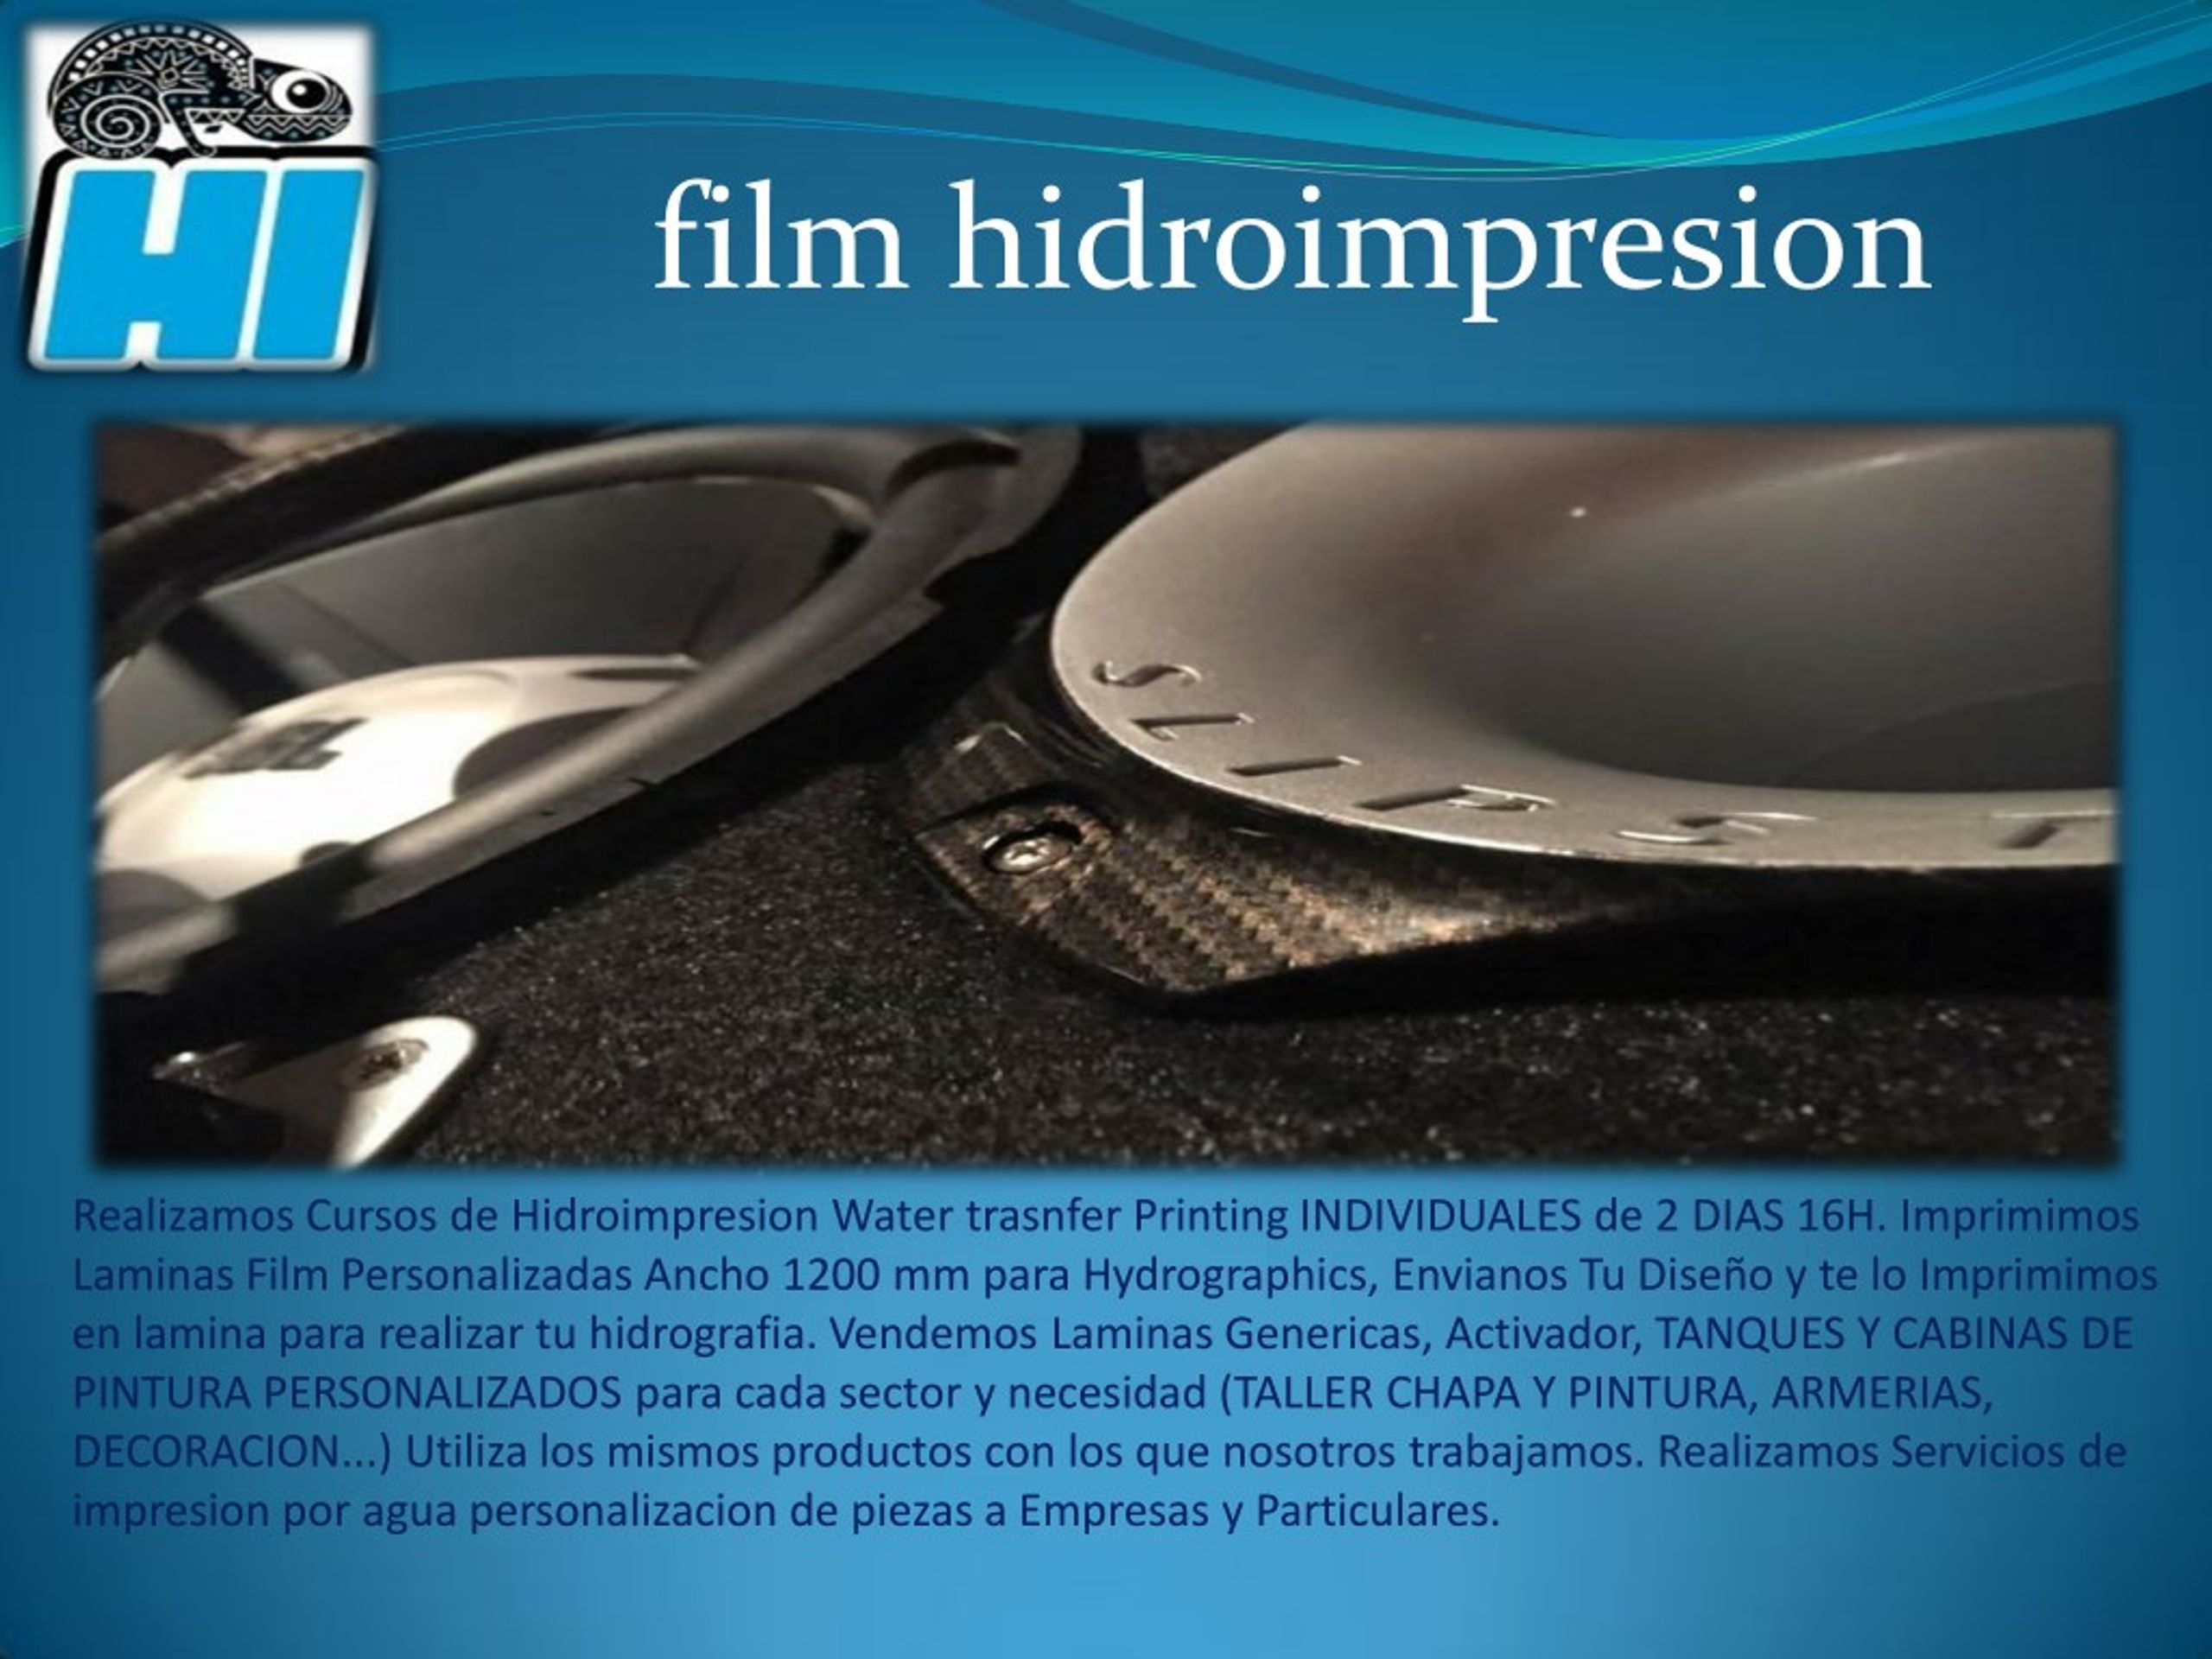 PPT - HIDROIMPRESION - VENTA DE LAMINAS DESDE 3.38€- ACTIVADOR  -WATERTRANSFER - HIDROGRAFIA PowerPoint Presentation - ID:7589352